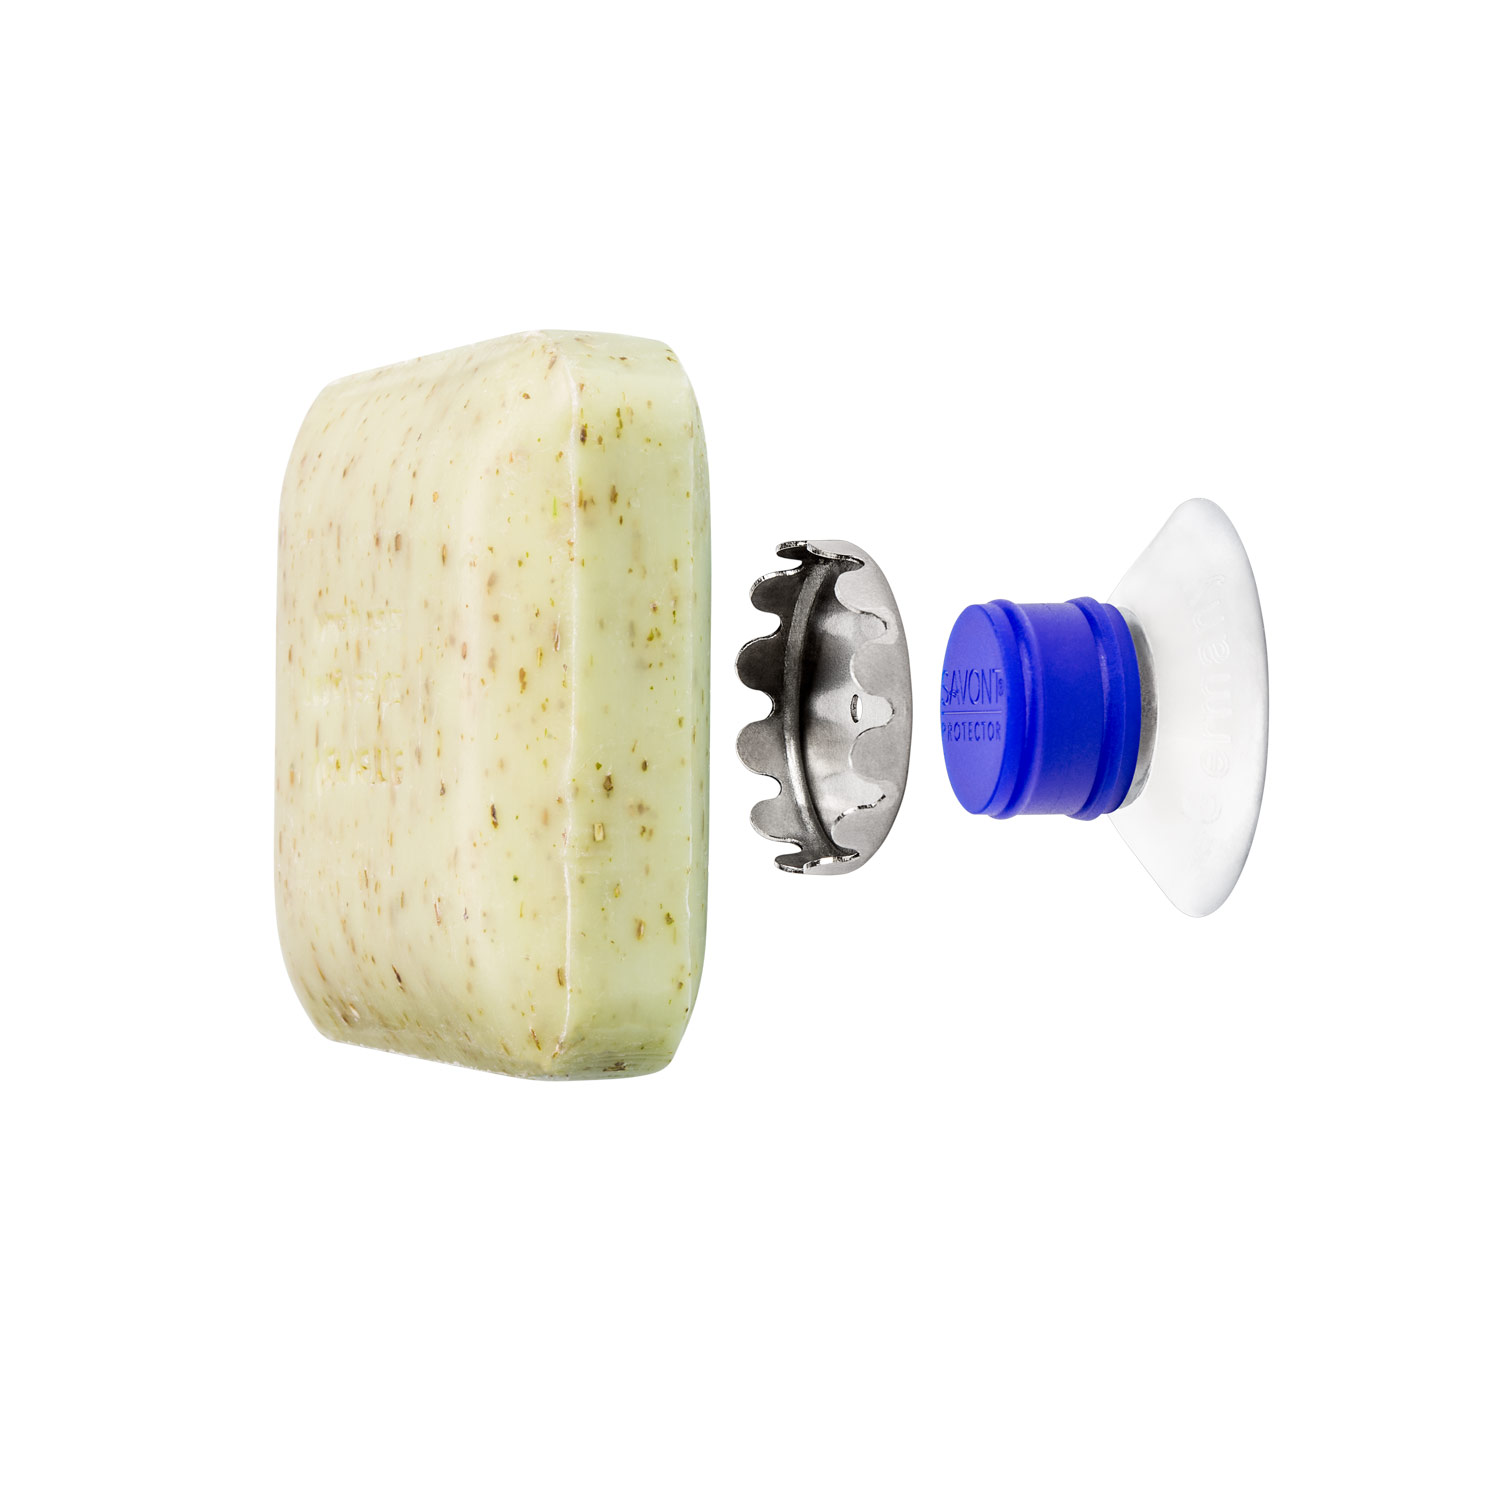 Seifenhalter für feste Seife mit Magnet agiert wie ein Seifenspender für Festseife